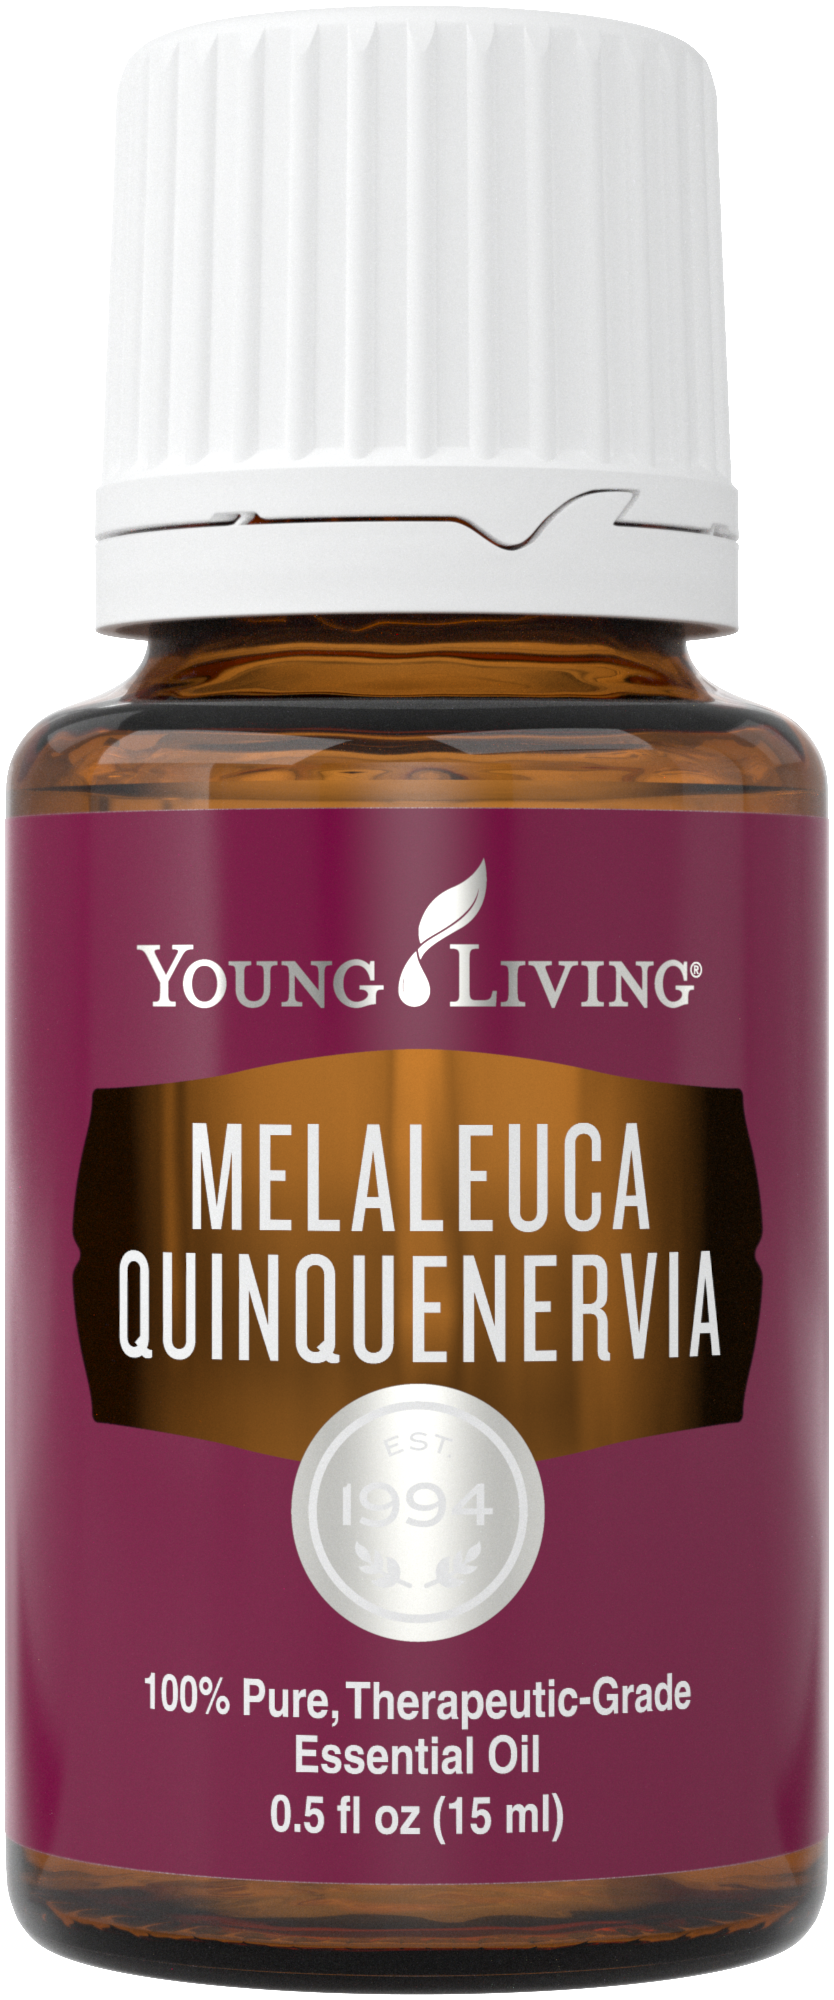 Melaleuca Quinquenervia 15ml Silo.png